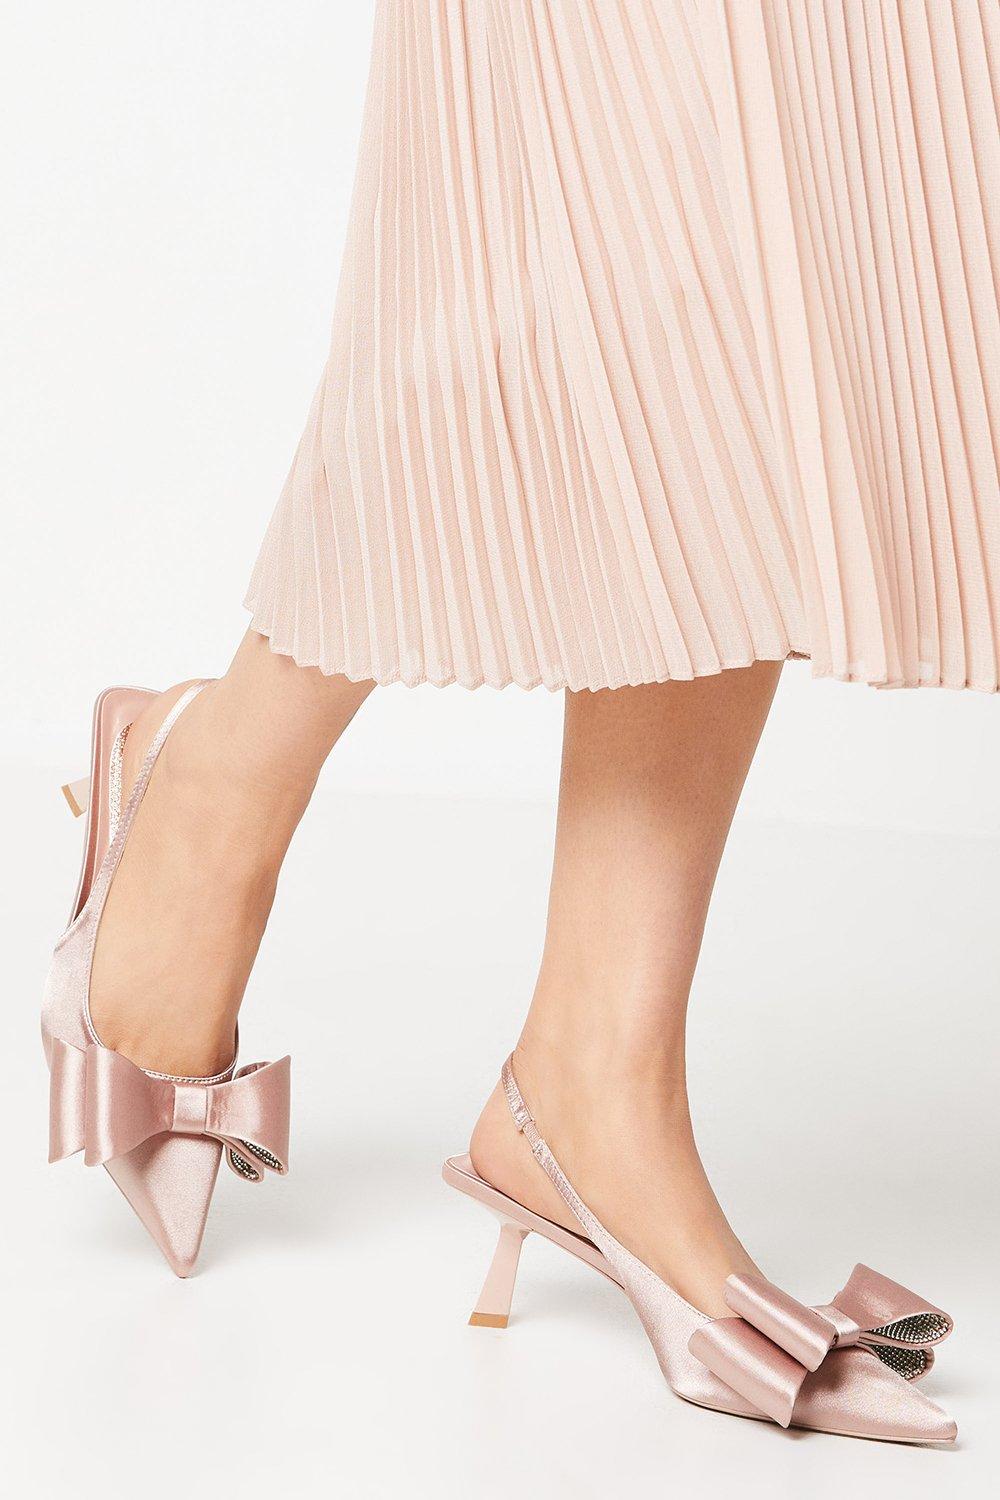 Savannah Satin Bow Detail Kitten Heel Court Shoes - Pink